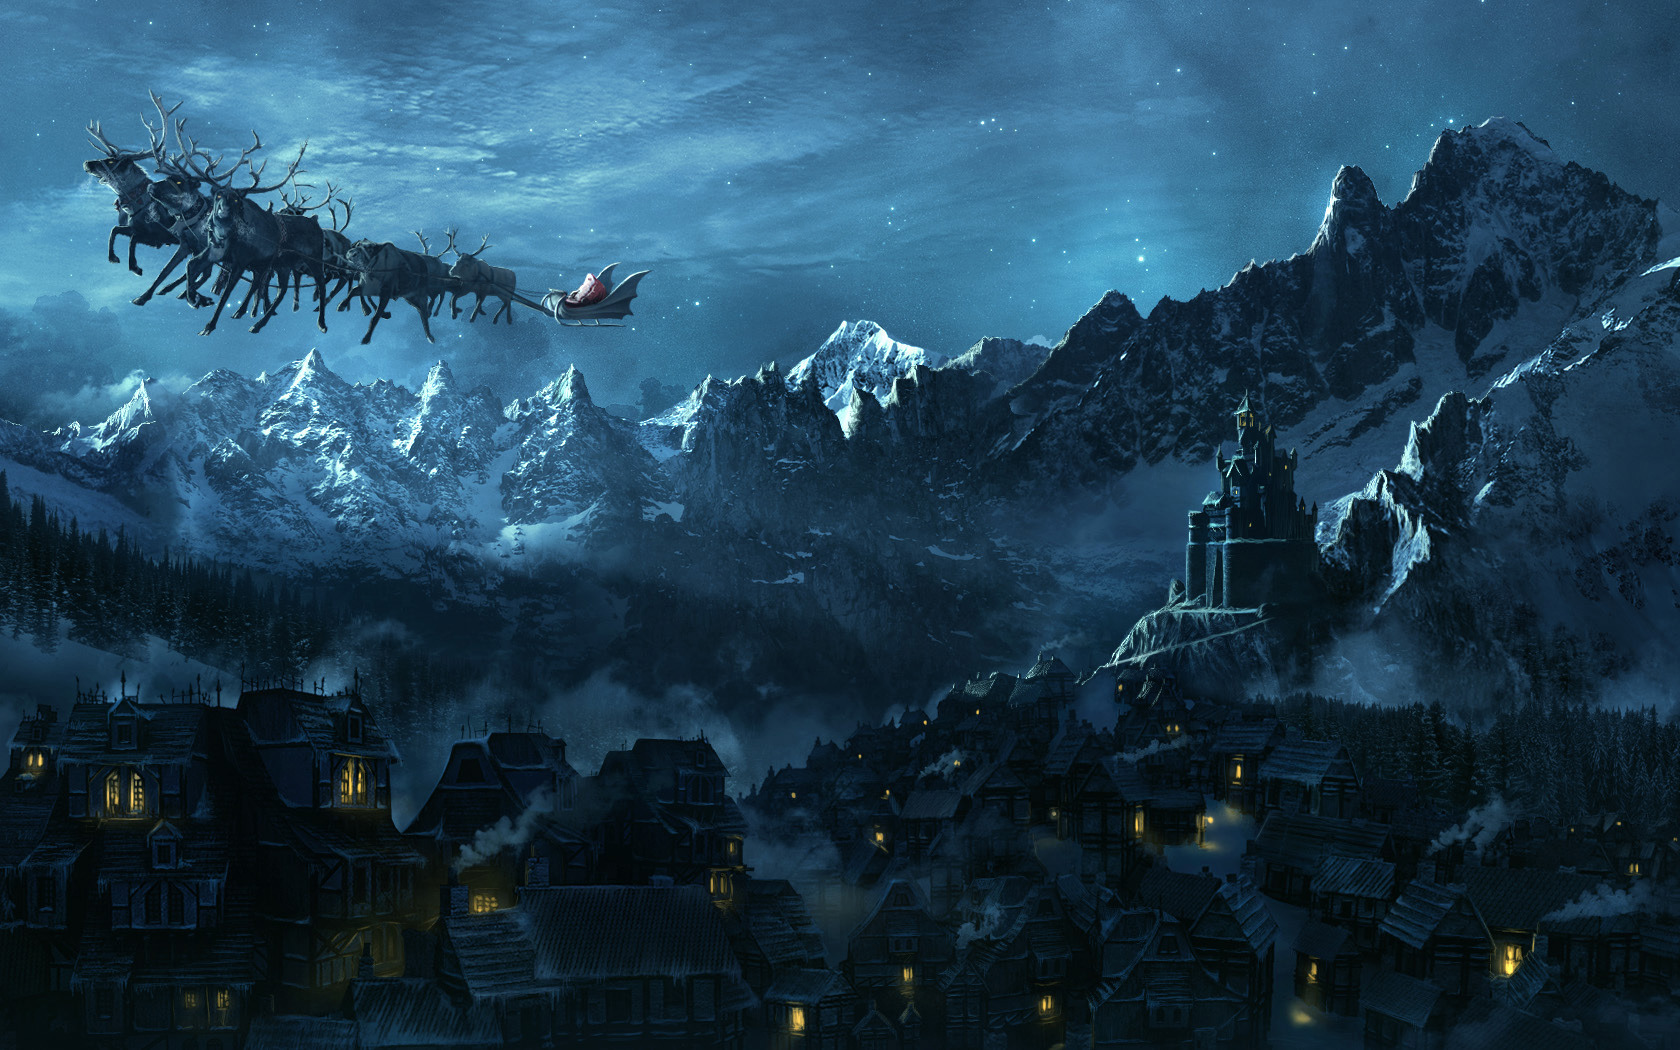 3d обои Санта Клаус летит над ночной деревушкой лежащей у подножья гор, чтобы залезть в камин к ее жителям  ночь # 67774